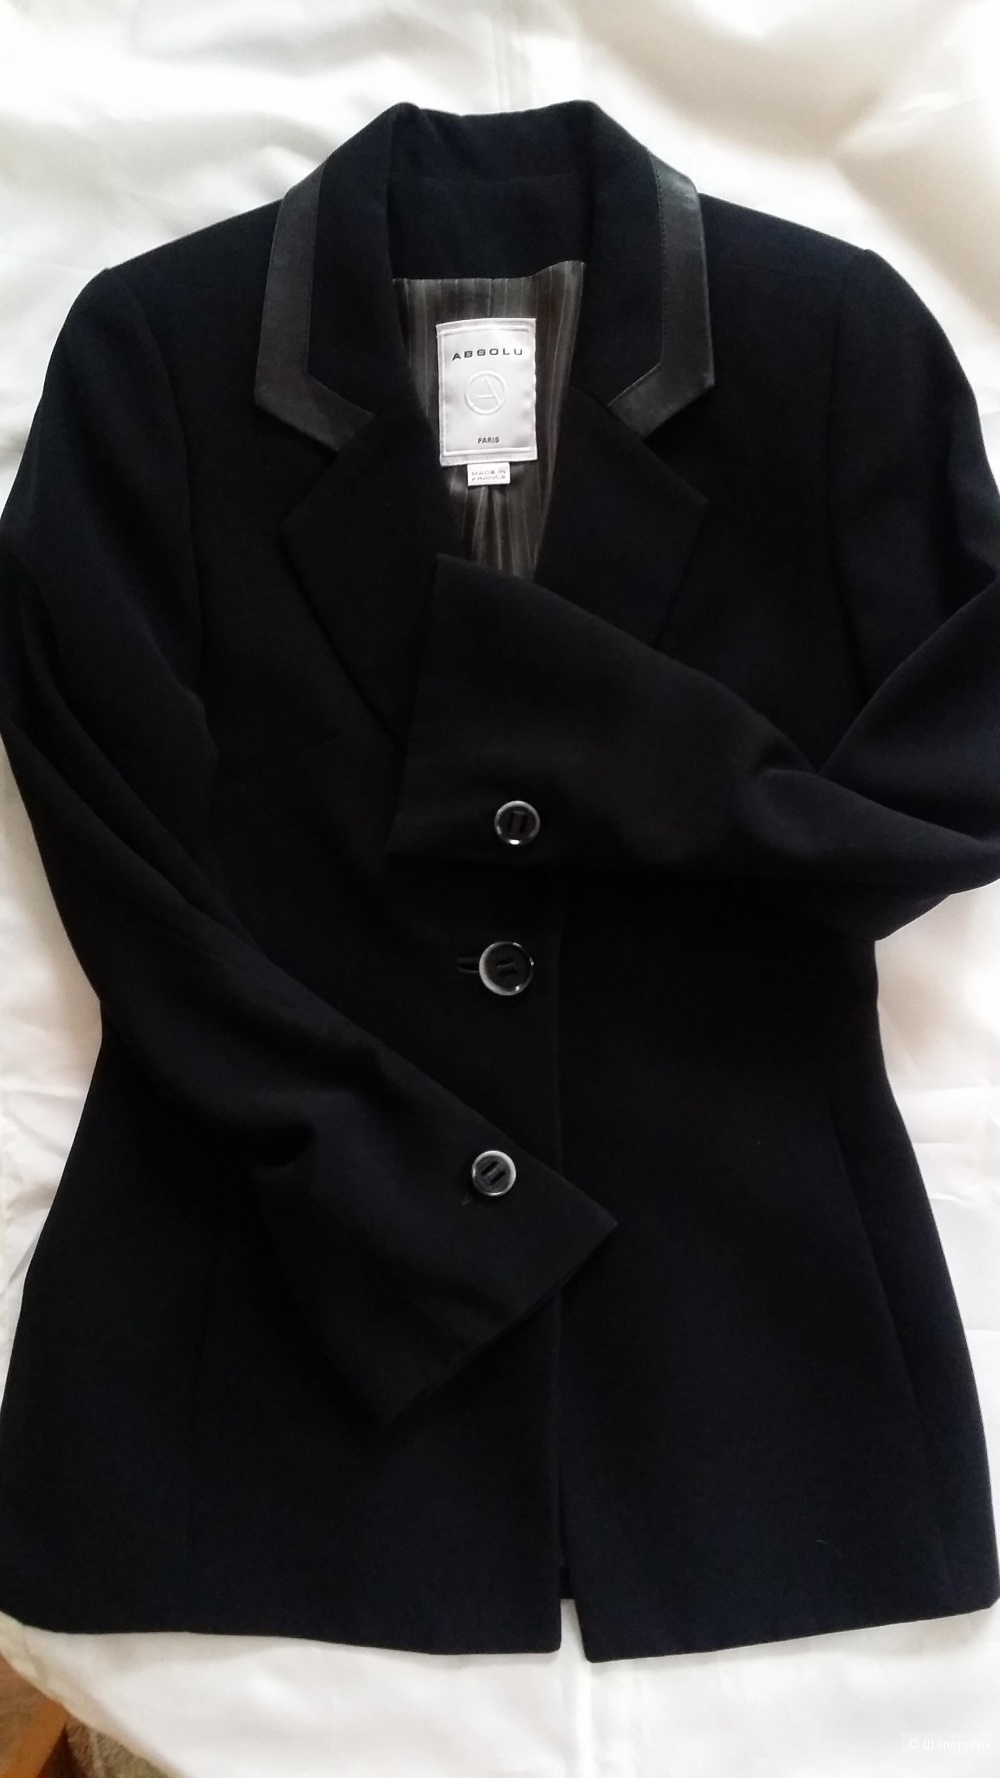 Классический приталенный пиджак ABSOLU Paris  42- 44 размера